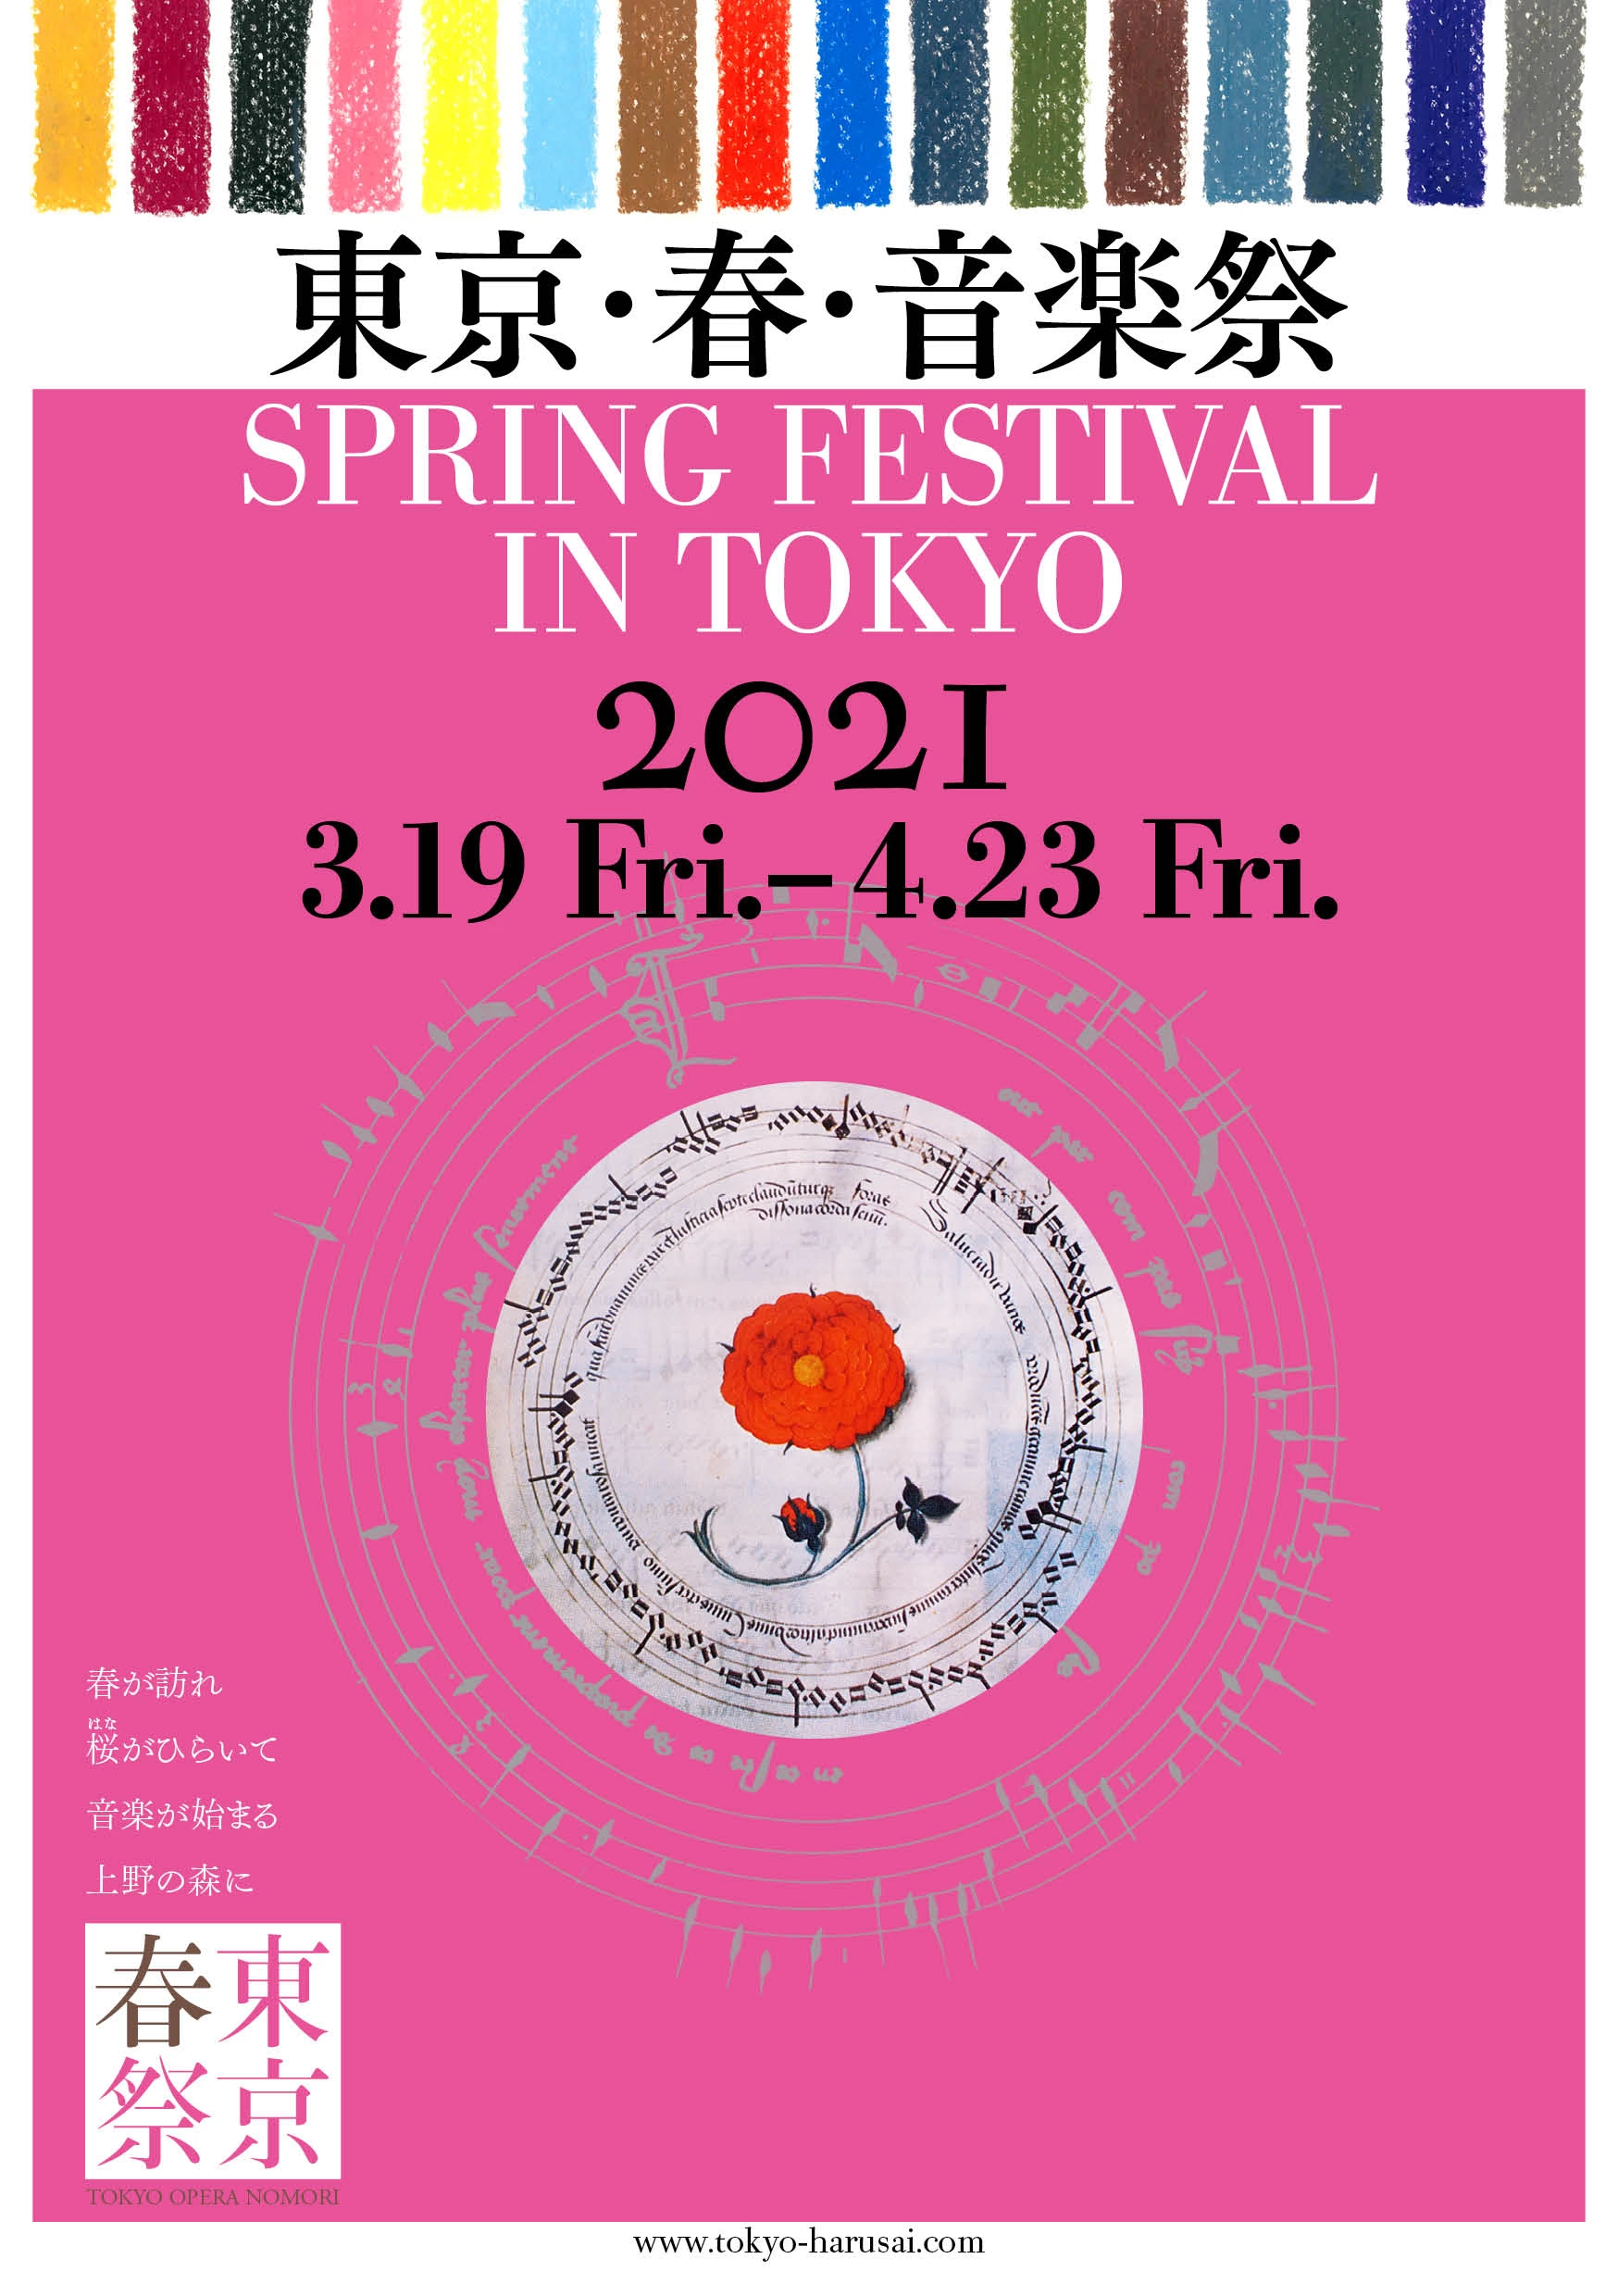 東京・春・音楽祭2021